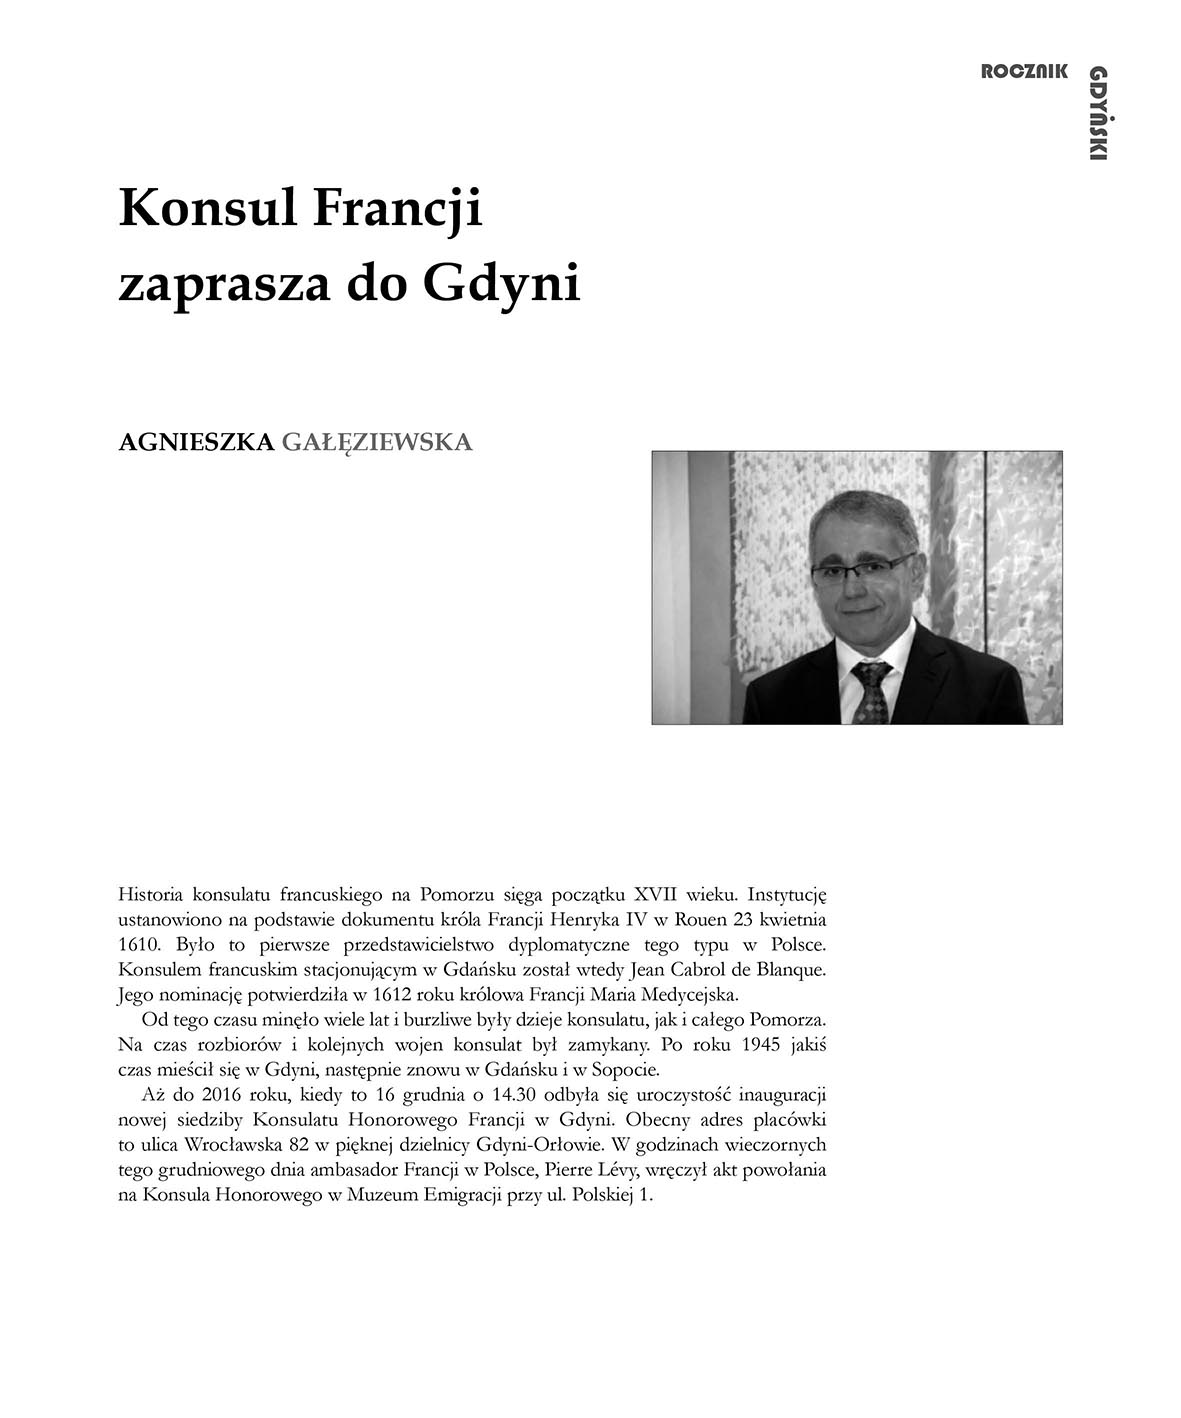 Konsul Francji zaprasza do Gdyni